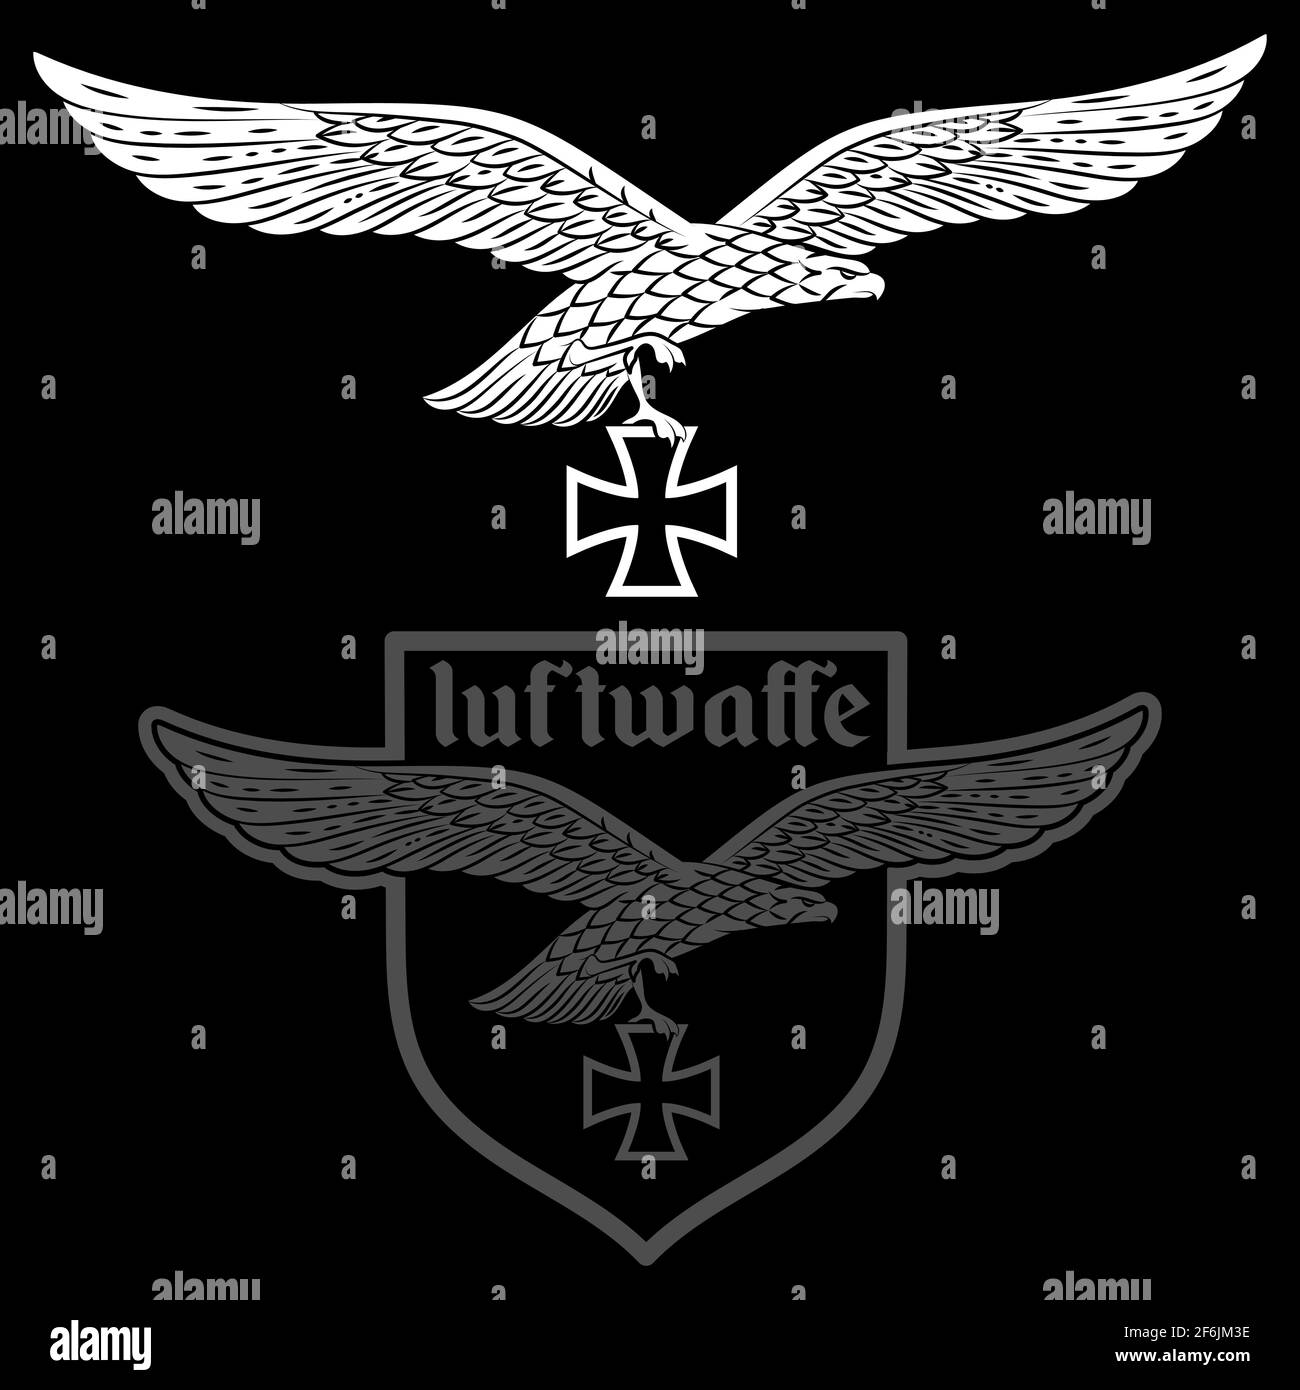 Distintivo dell'Aeronautica militare tedesca. Aquila con ali allungate e croce di ferro Illustrazione Vettoriale